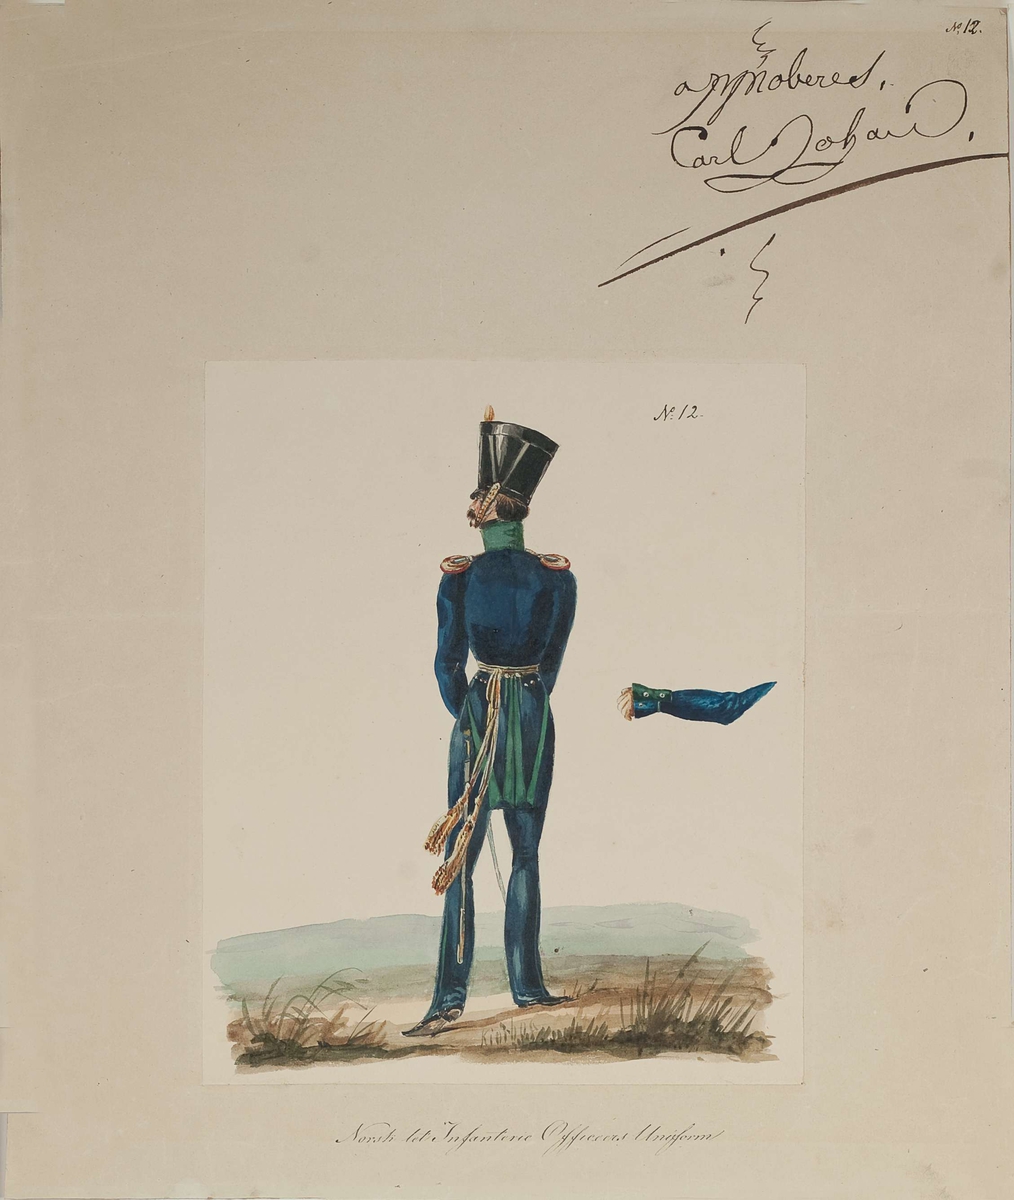 Approbasjonstegning for uniform til offiser lett infanteri. Tekst: No 12. Norsk lette Infanterie Officeers Uniform. Approbert Carl Johan, 1830.